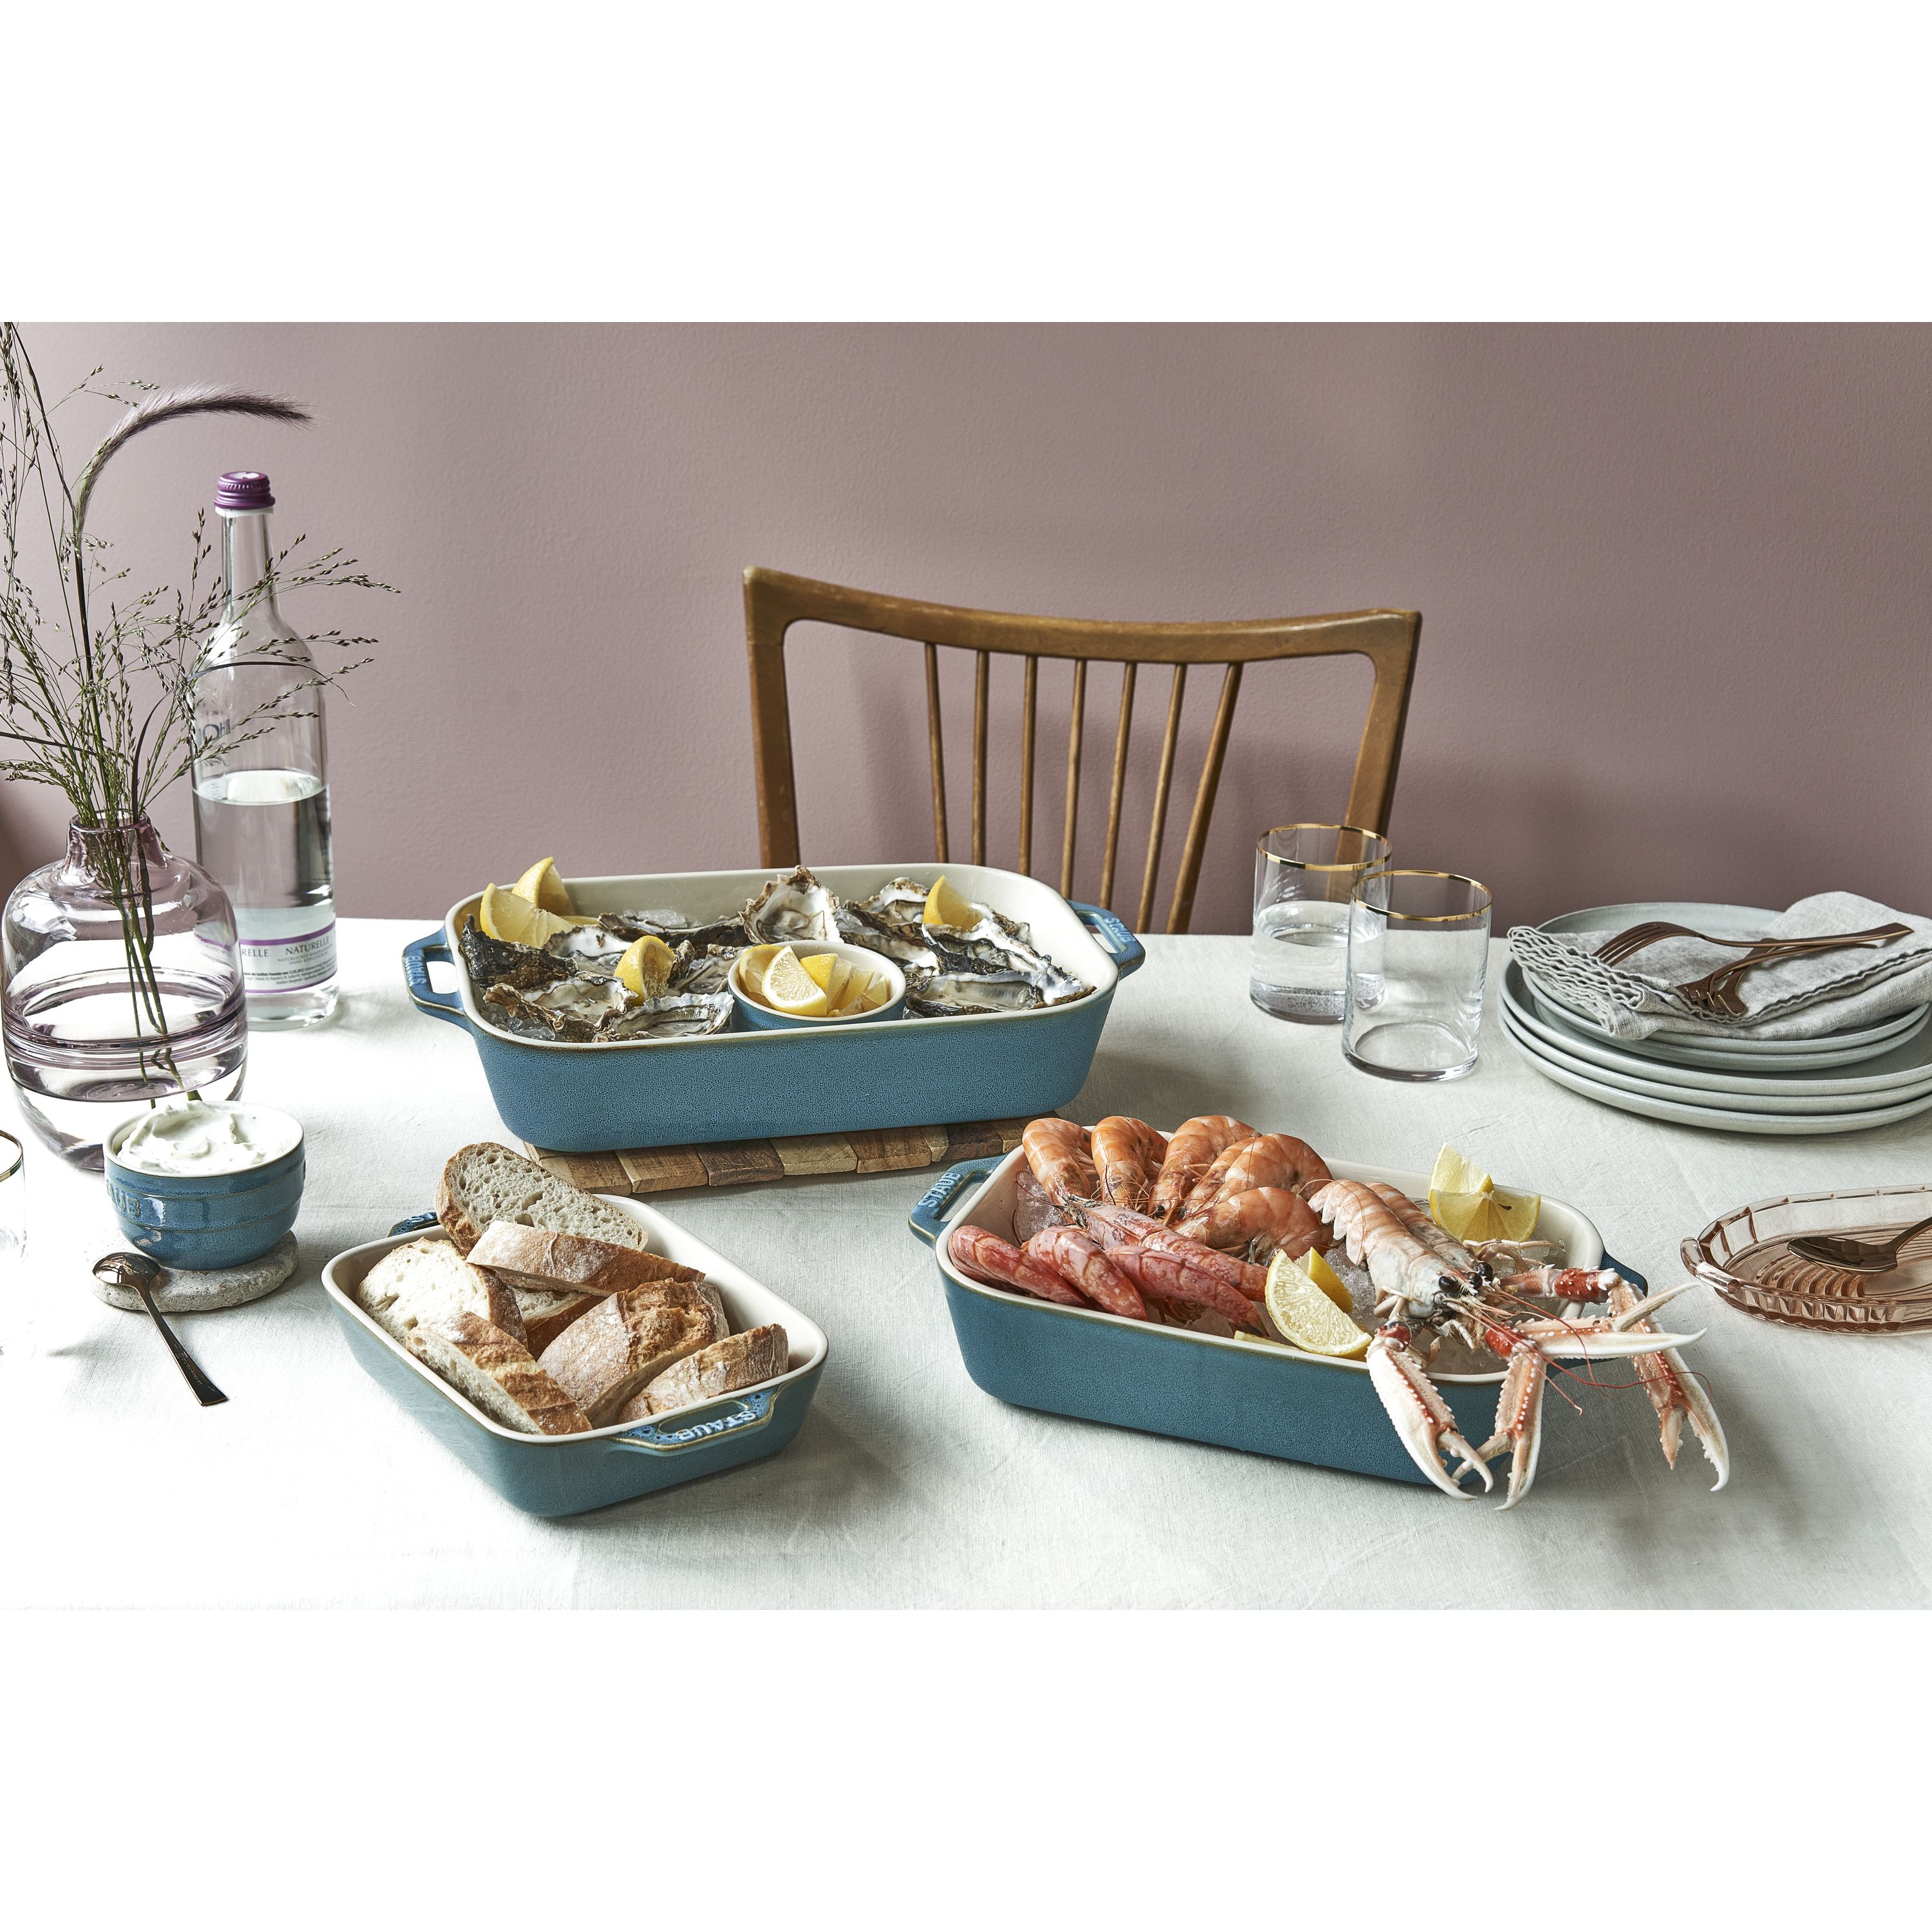 Large Rectangle Ceramic Baking Dish, Bread Baking Pan, Pottery English Cake  Baking Dish, Easter Gift, Rustic Baking Pan 